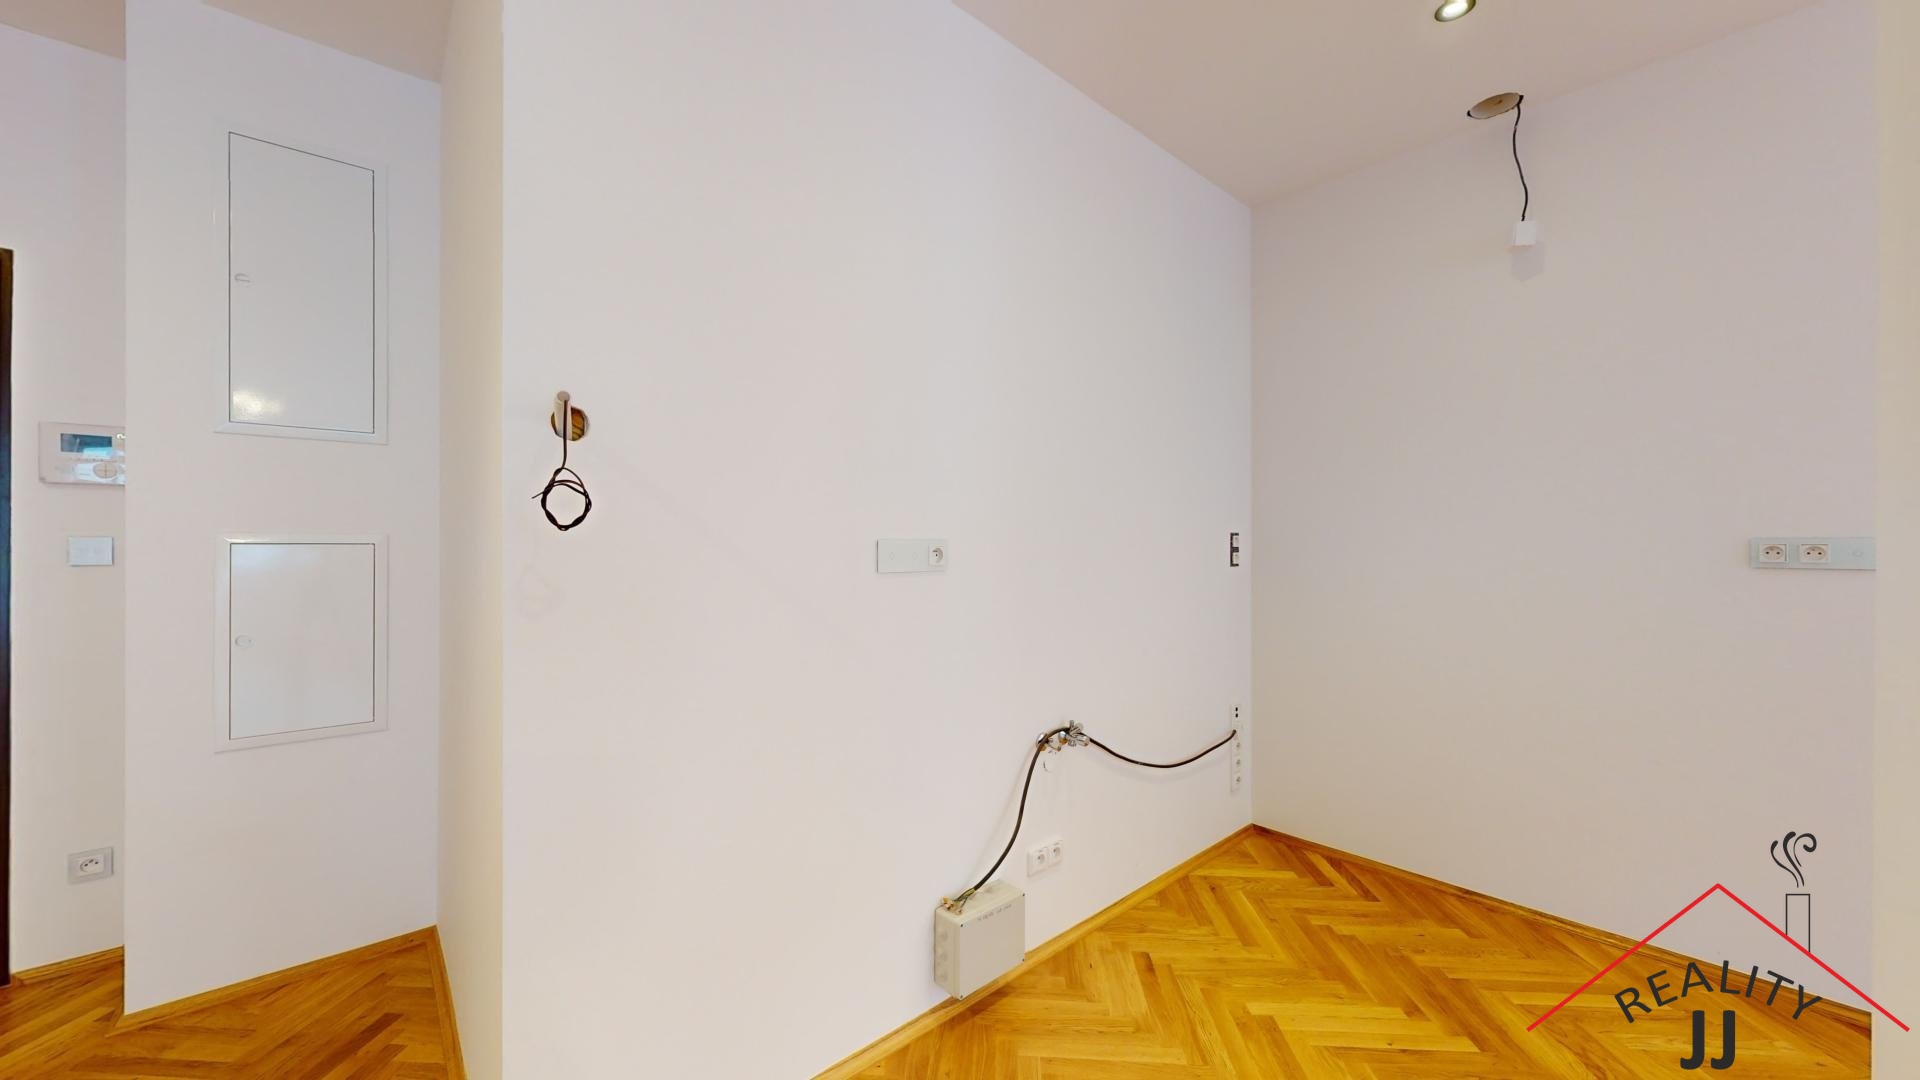 Apartment-for-sell-Smilovskeho-street-Prague-2-030